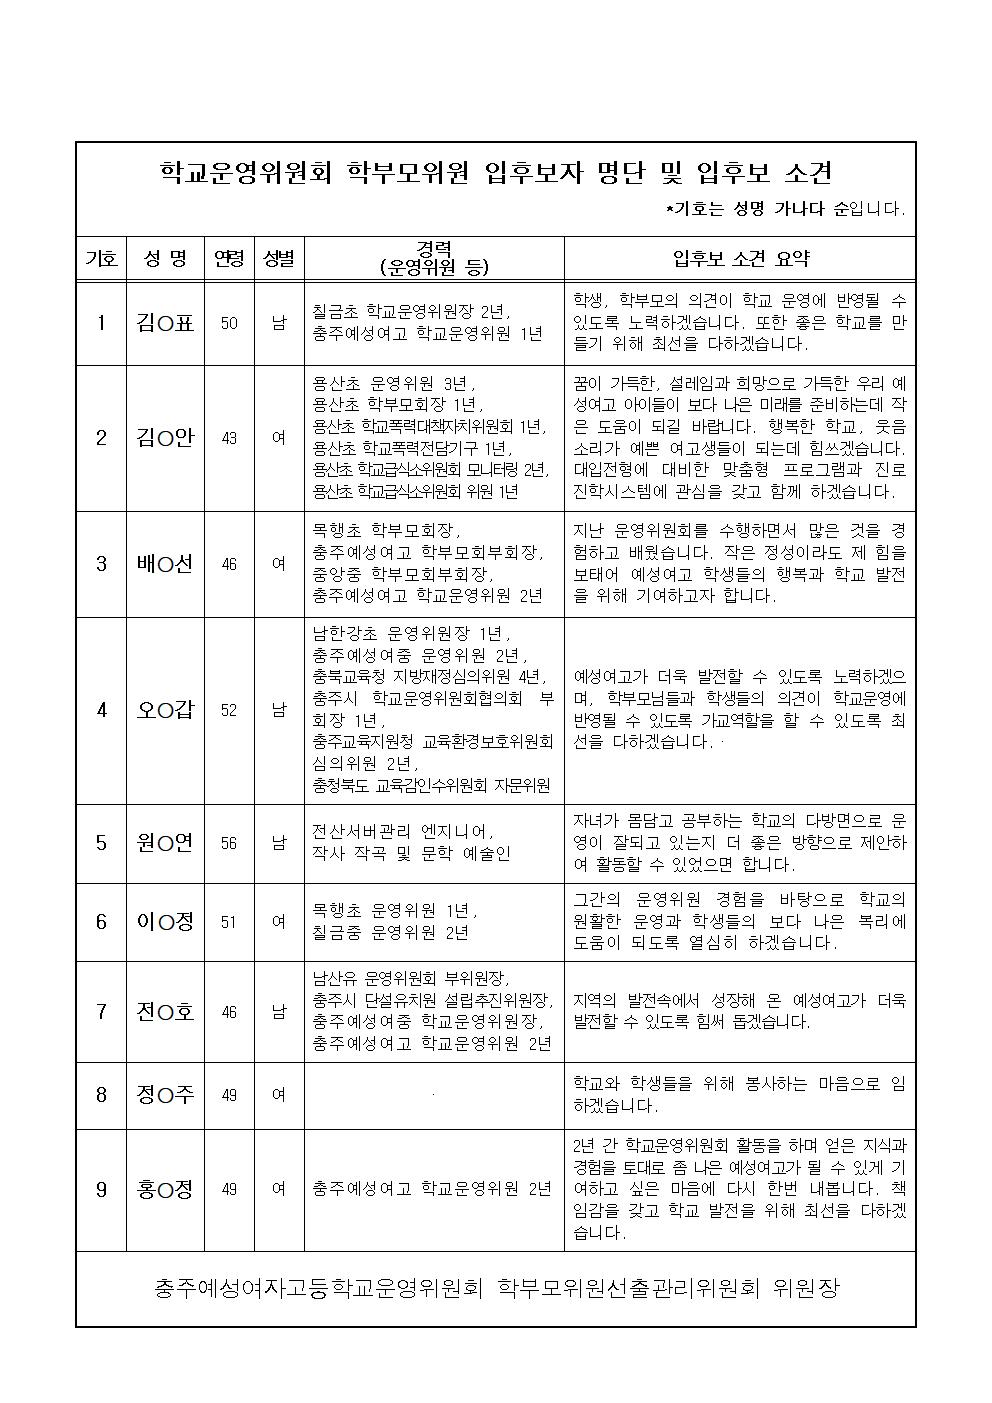 학교운영위원회 학부모위원 입후보 소견 및 선거 안내문 - 홈피002